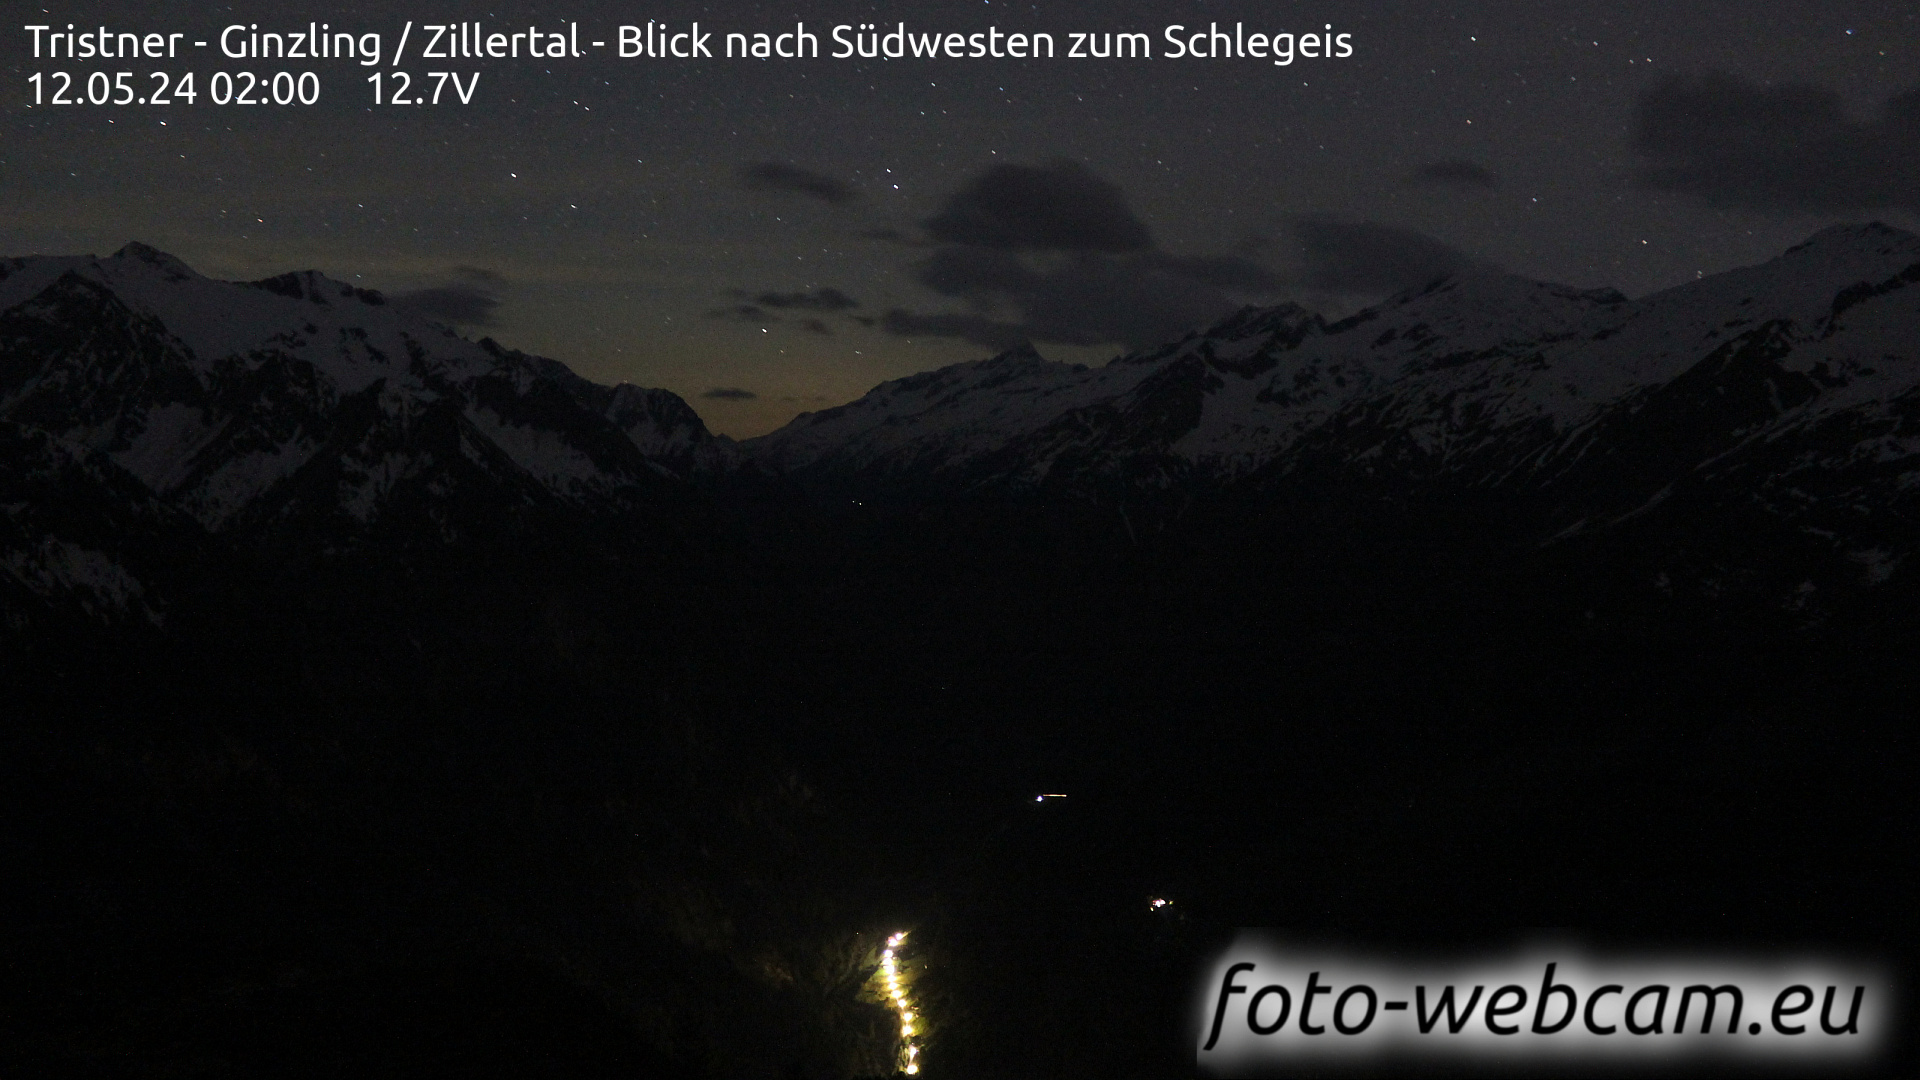 Mayrhofen Je. 02:01